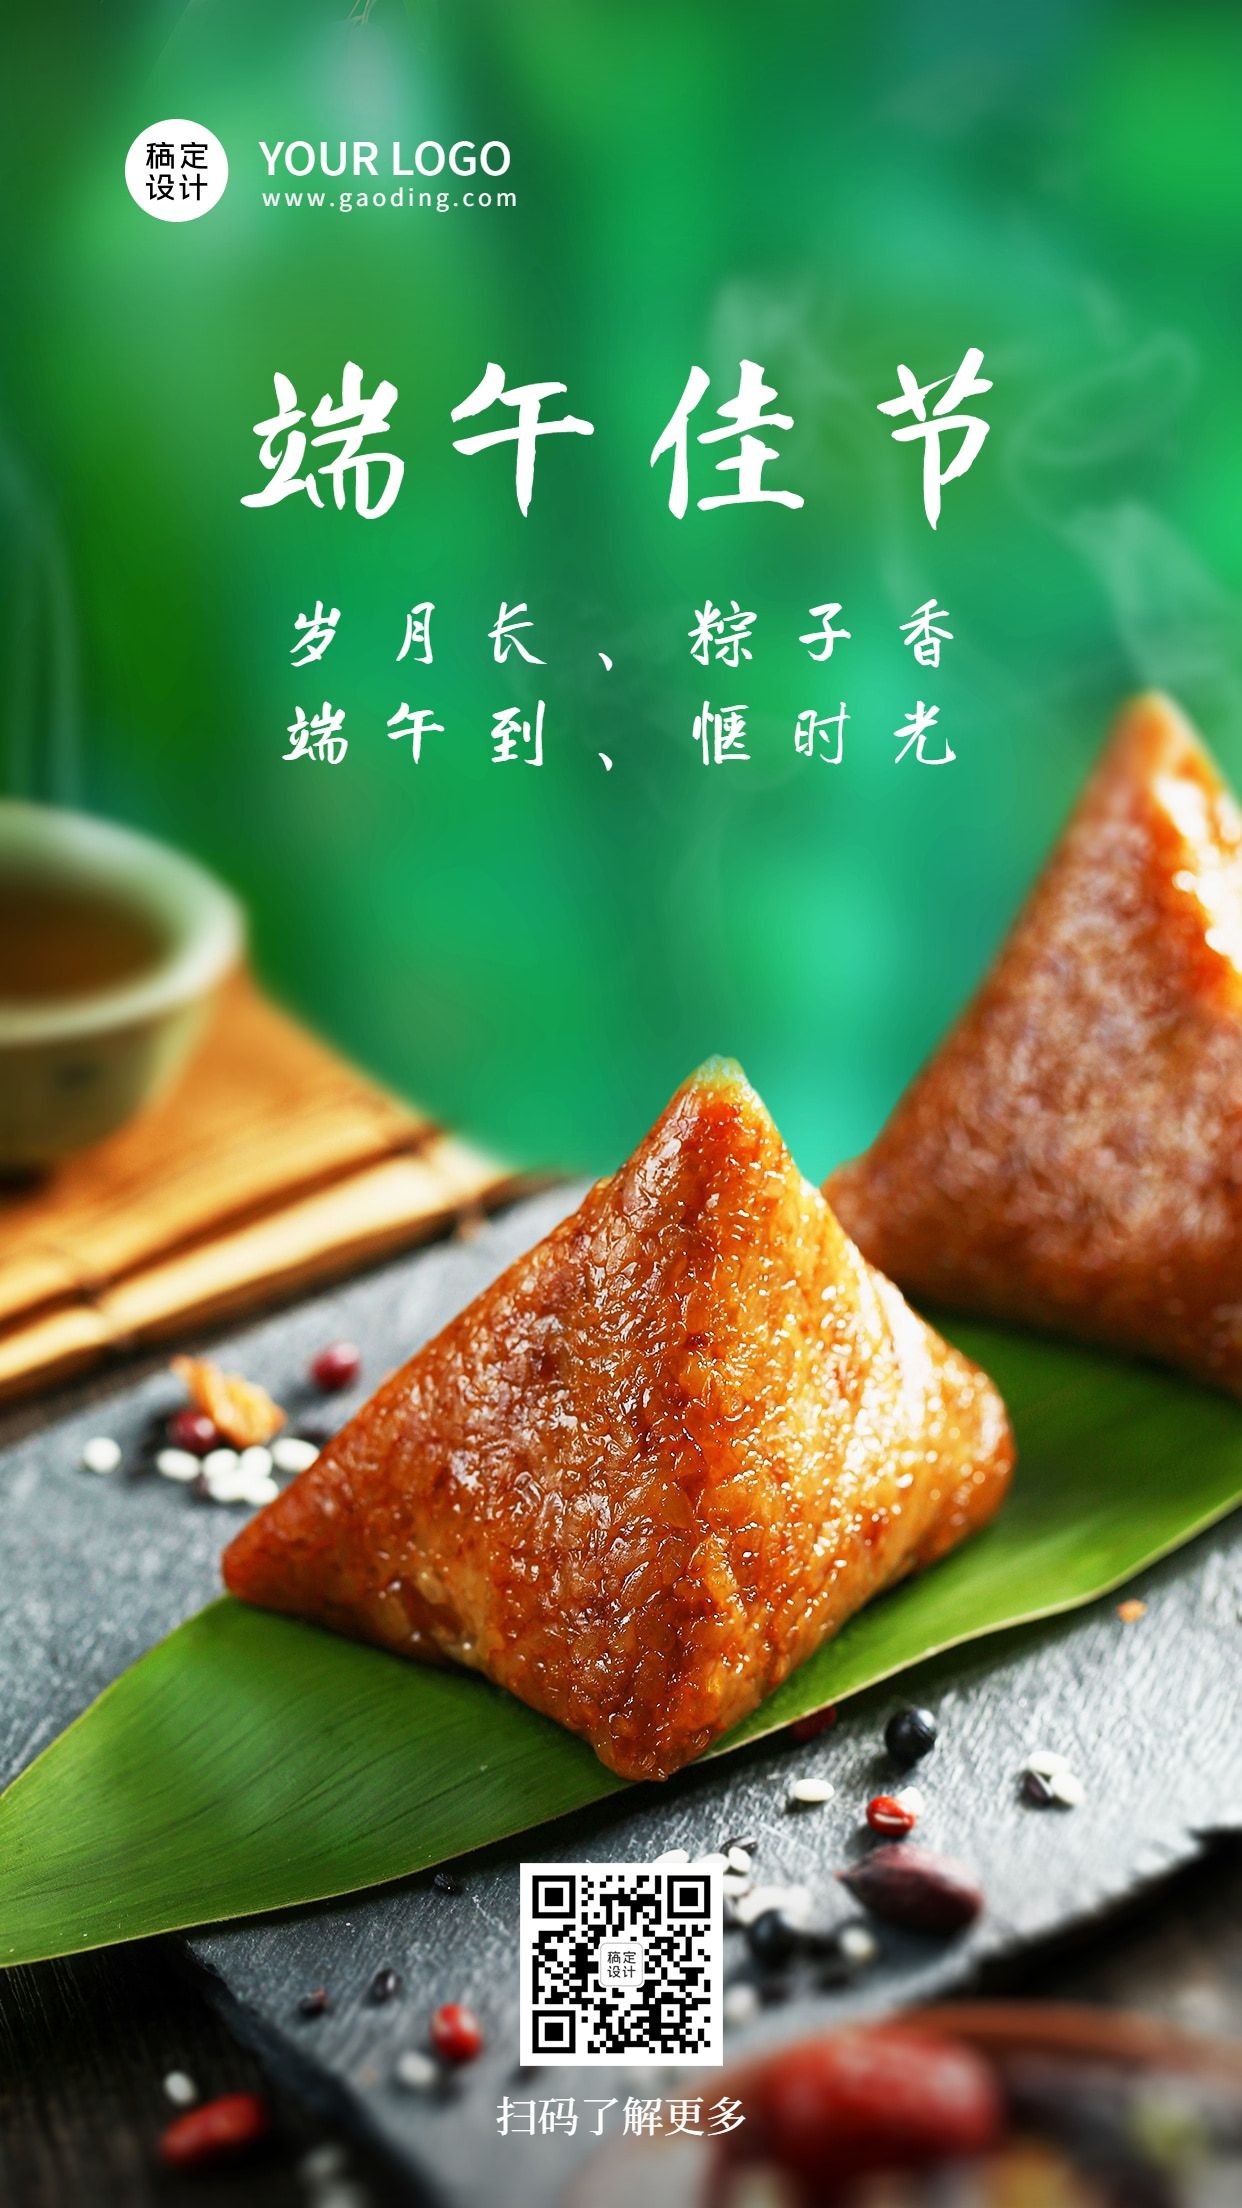 端午安康习俗吃粽子实景手机海报